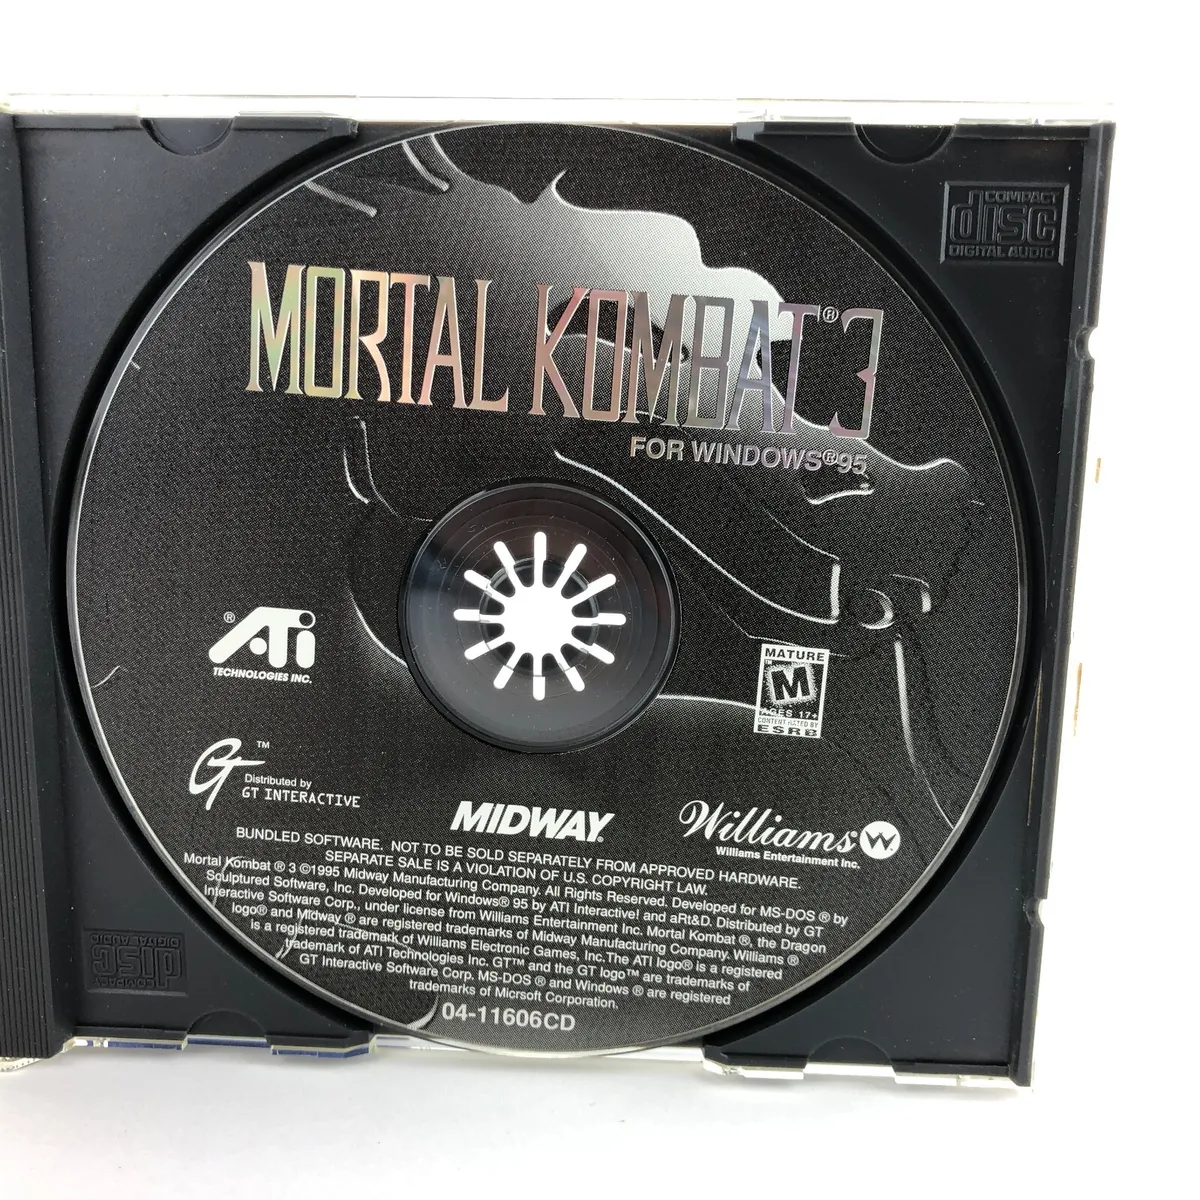 oldschoolgames — Mortal Kombat 3